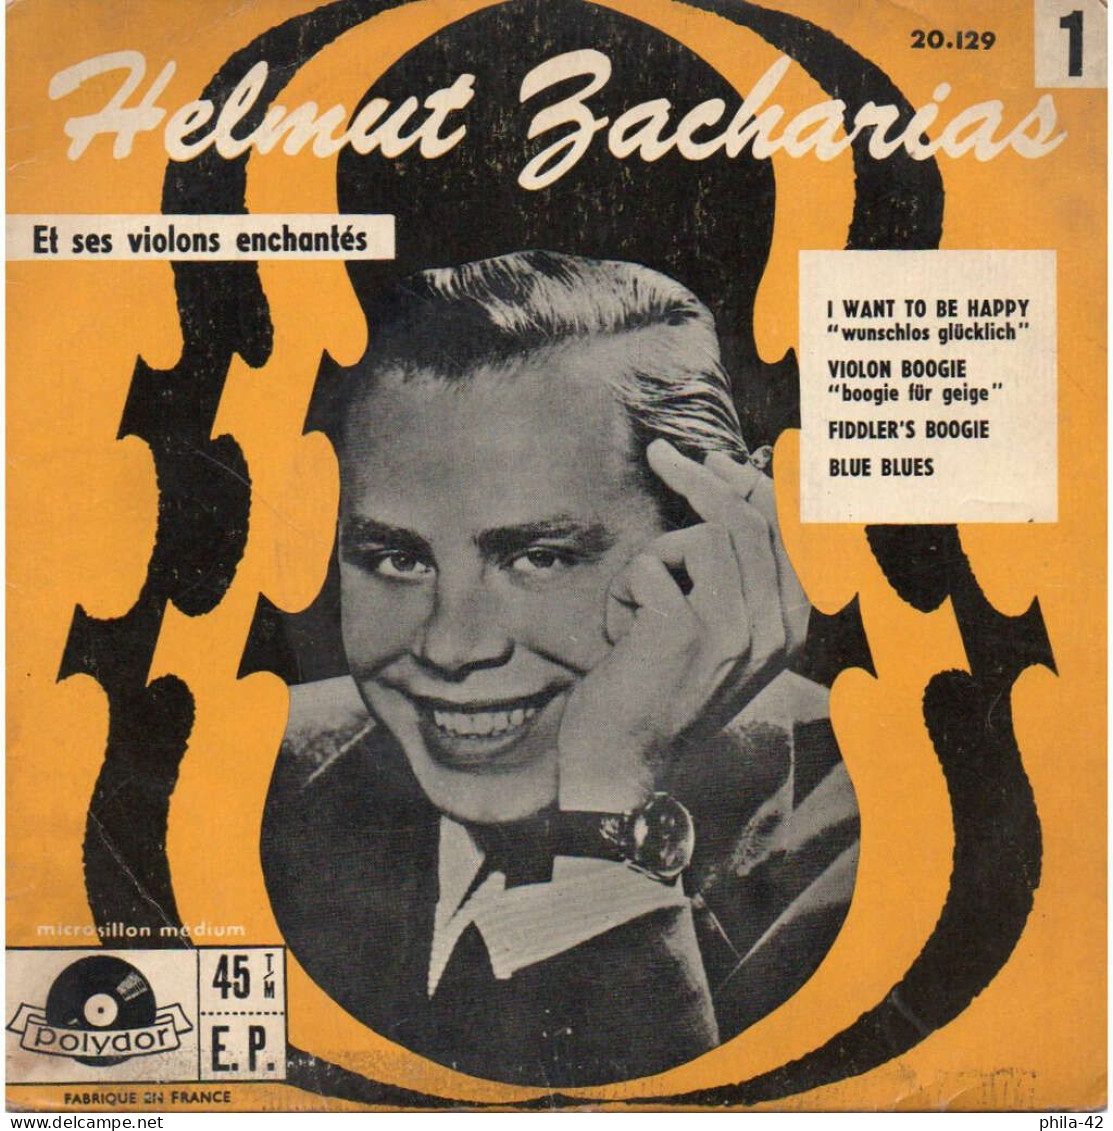 Helmut Zacharias Et Ses Violons Enchantés - Vinyle 45 Tours 1958 - Polydor N° 20.129 - Classique